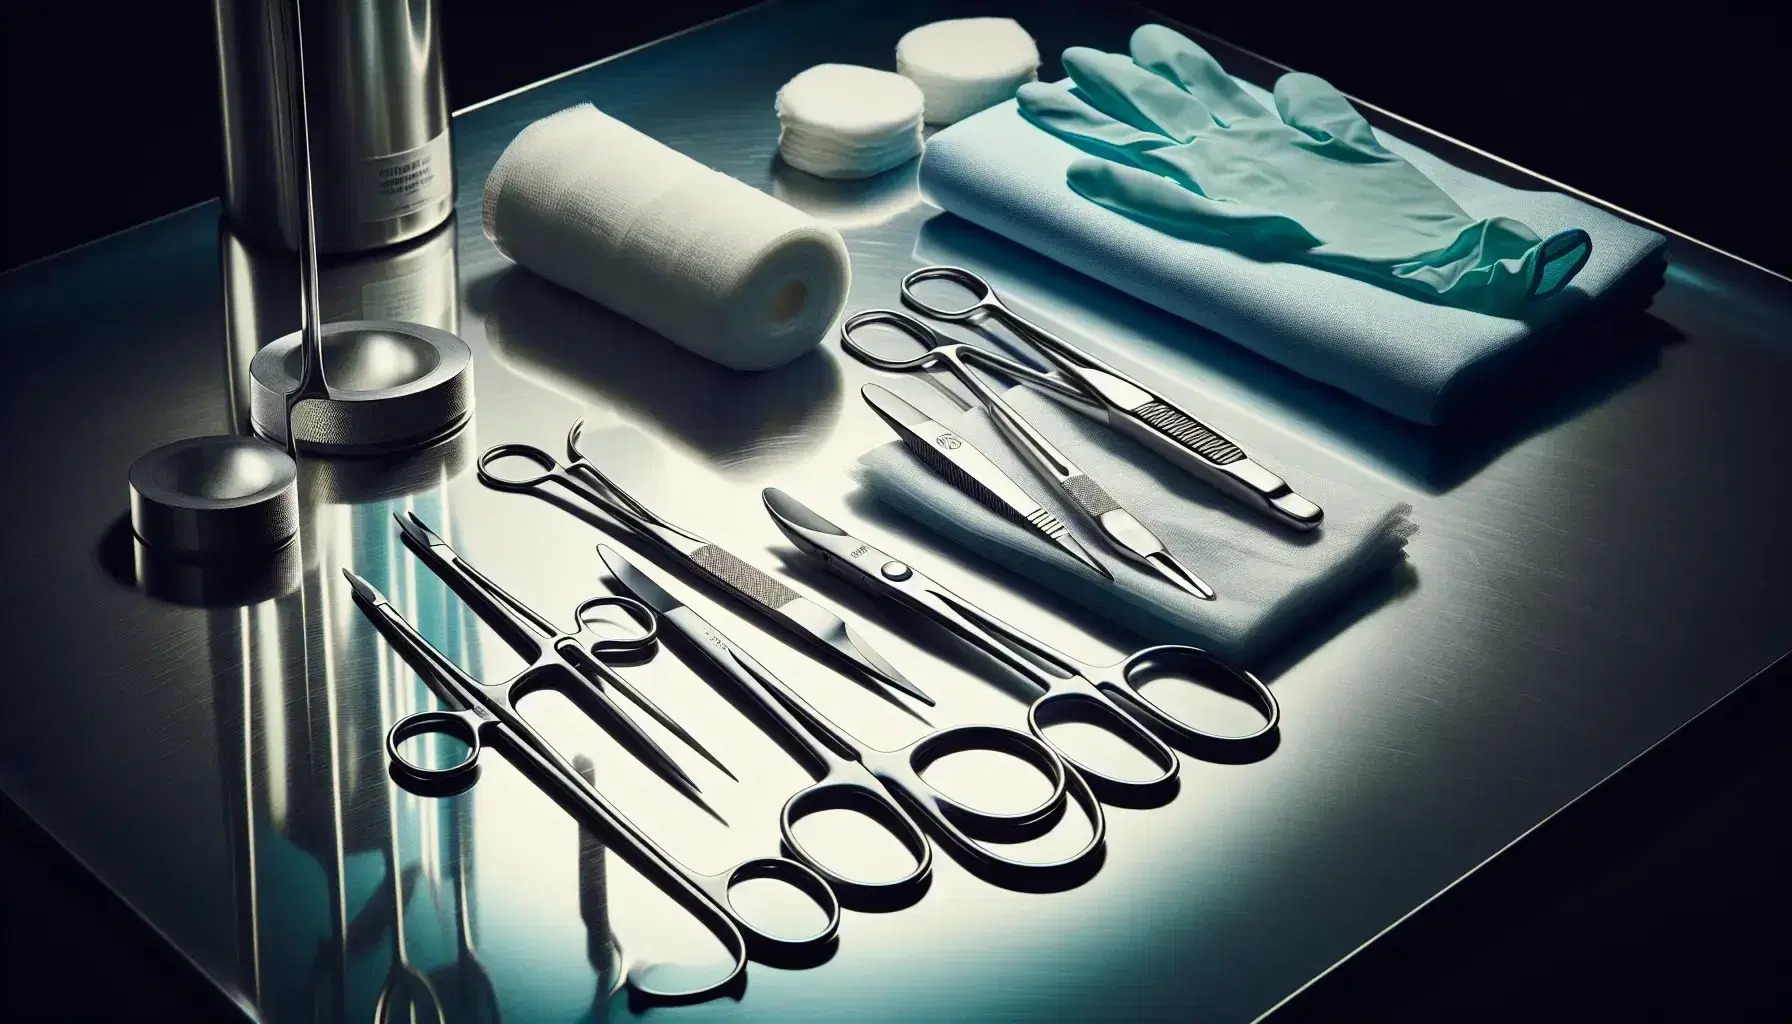 Instrumental médico quirúrgico esterilizado sobre superficie de acero, incluyendo tijeras, pinzas hemostáticas, bisturí, guantes de látex y gasa.